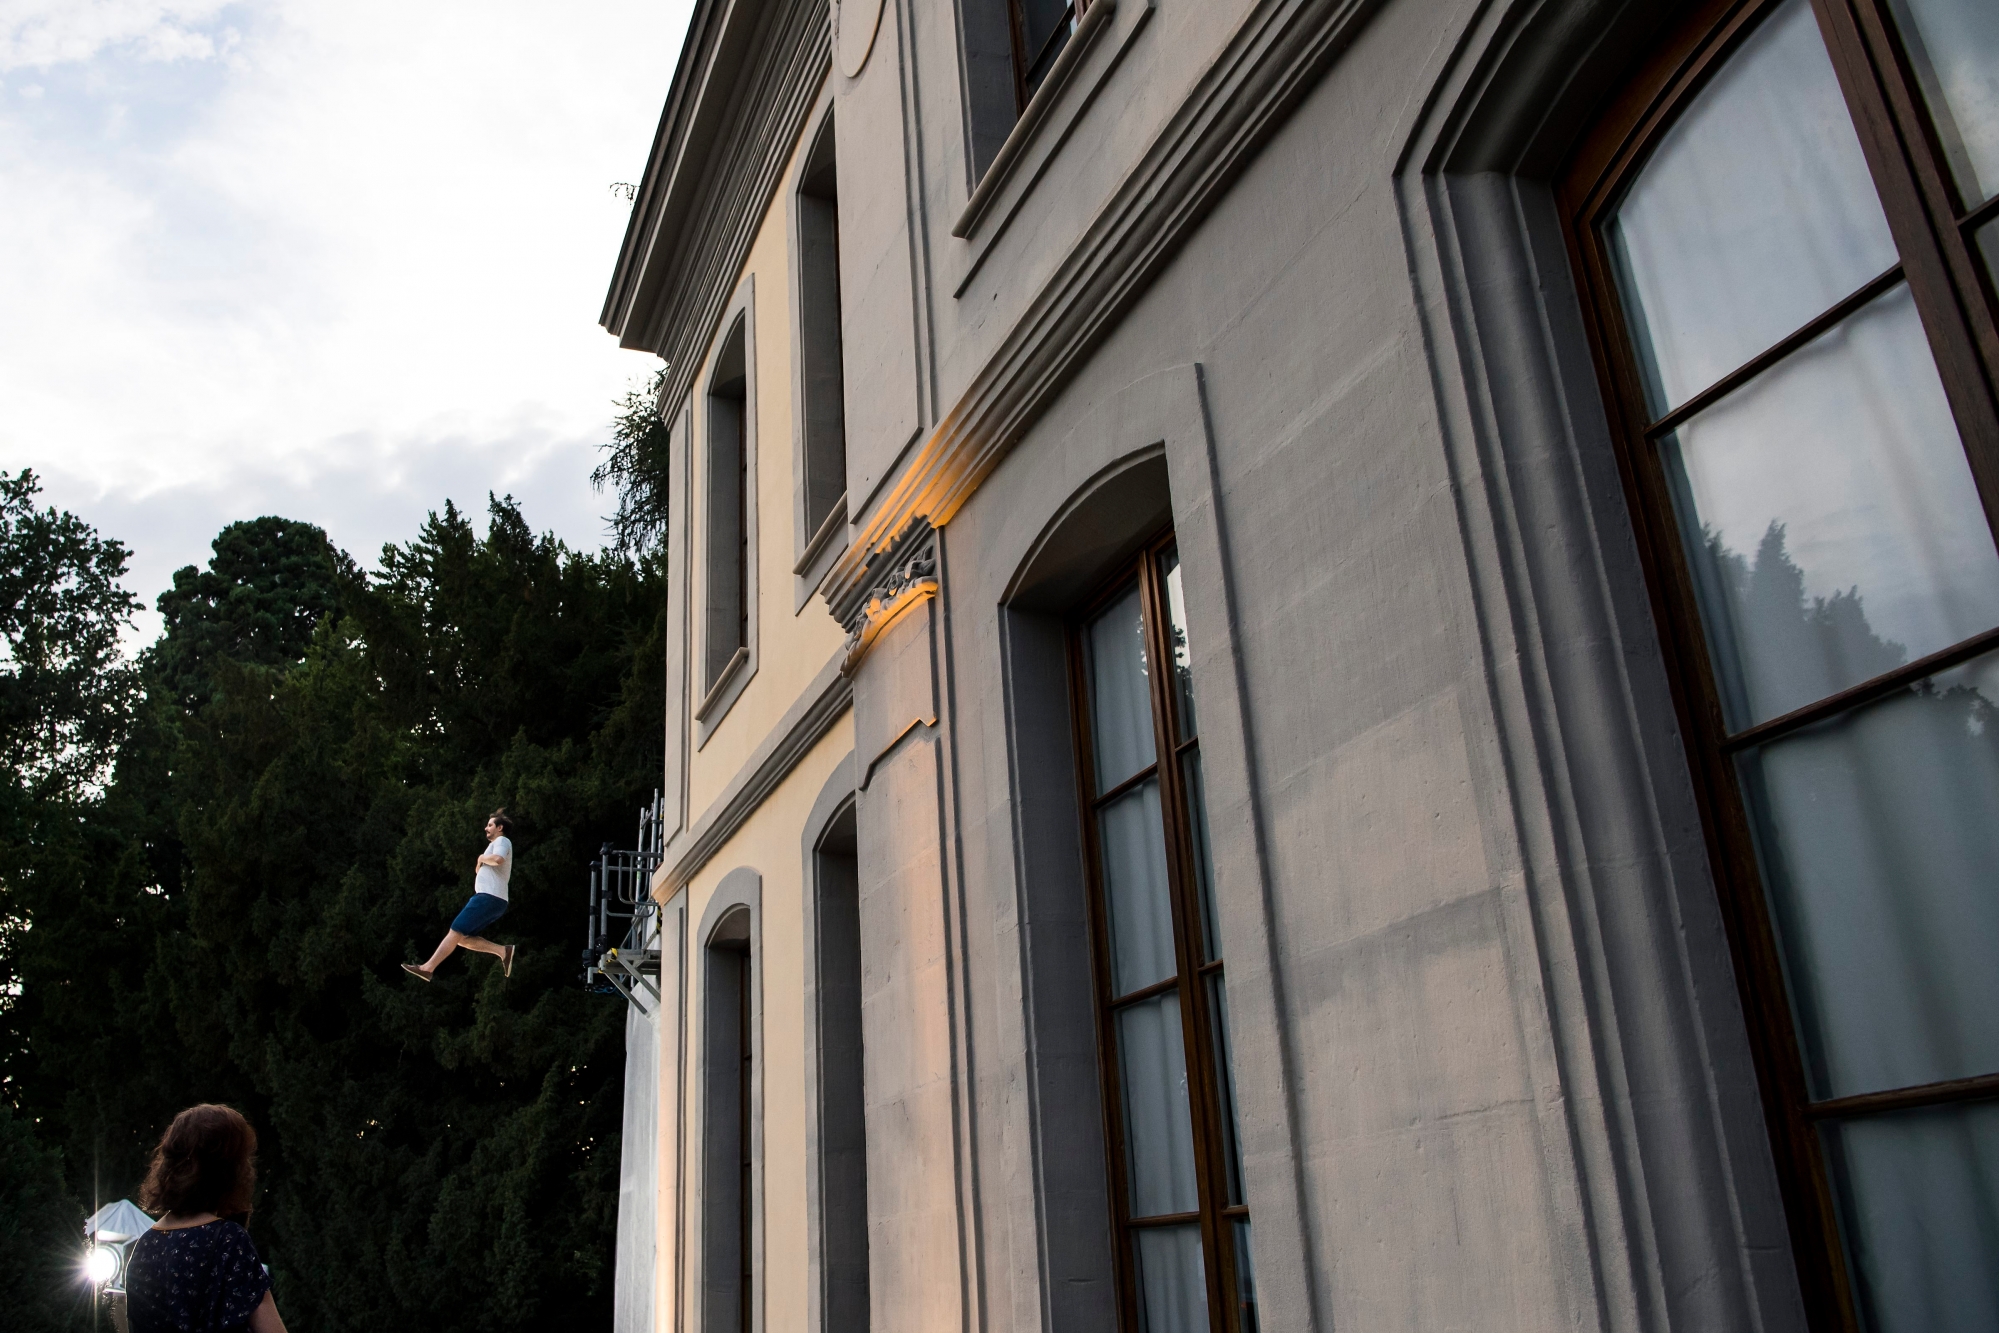 Une personne saute pendant l'animation "Saut dans le vide" propose par Stephane Chapuis lors de la 7eme edition de la Nuit des Images du Musee de l'Elysee ce samedi 24 juin 2017 a Lausanne. (KEYSTONE/Jean-Christophe Bott) SUISSE NUIT DES IMAGES